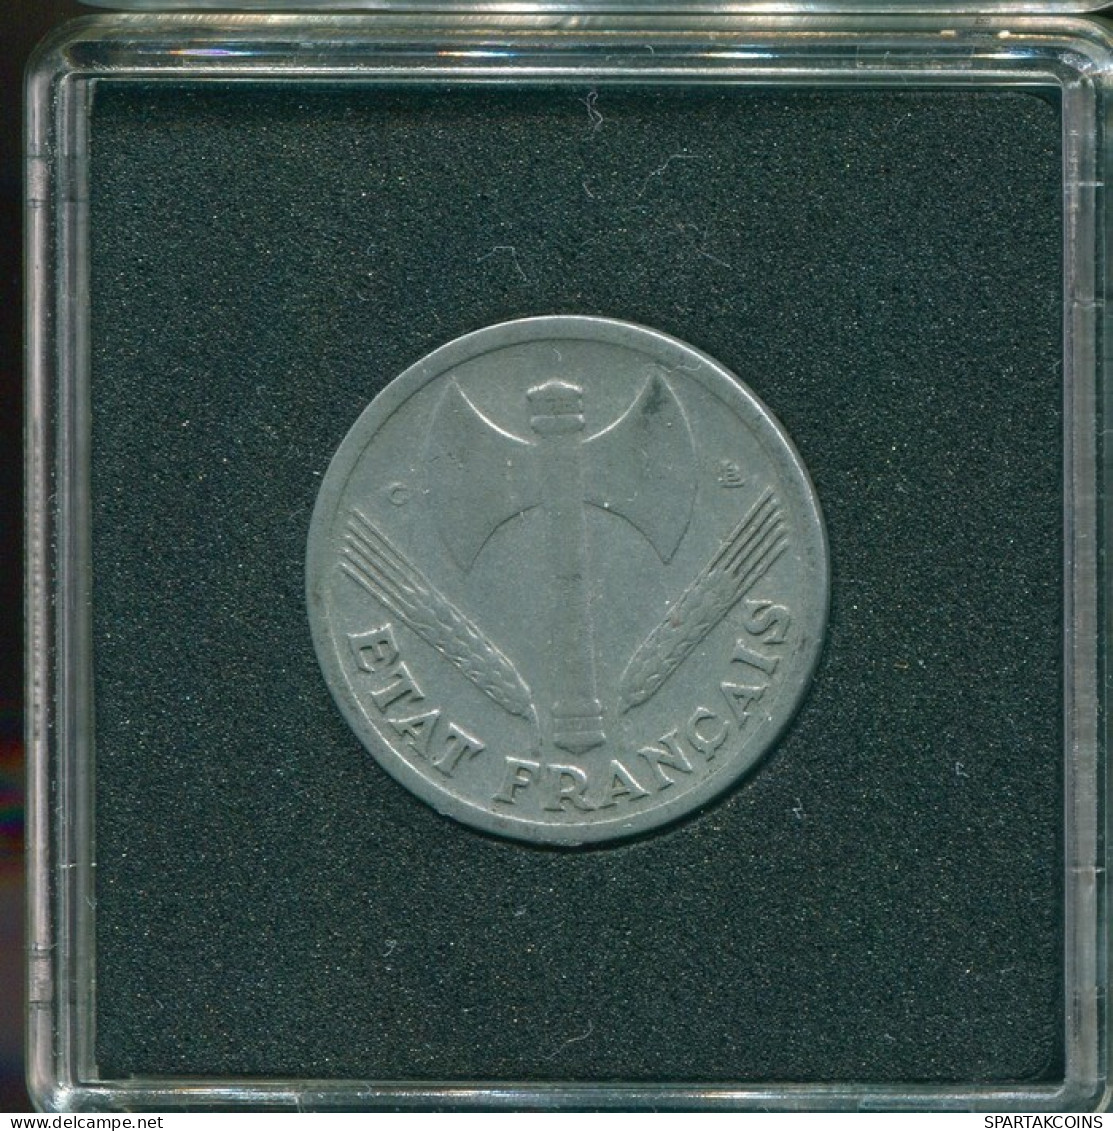 1 FRANC 1944 FRANCE Coin VF/XF #FR1146.4.U.A - 1 Franc